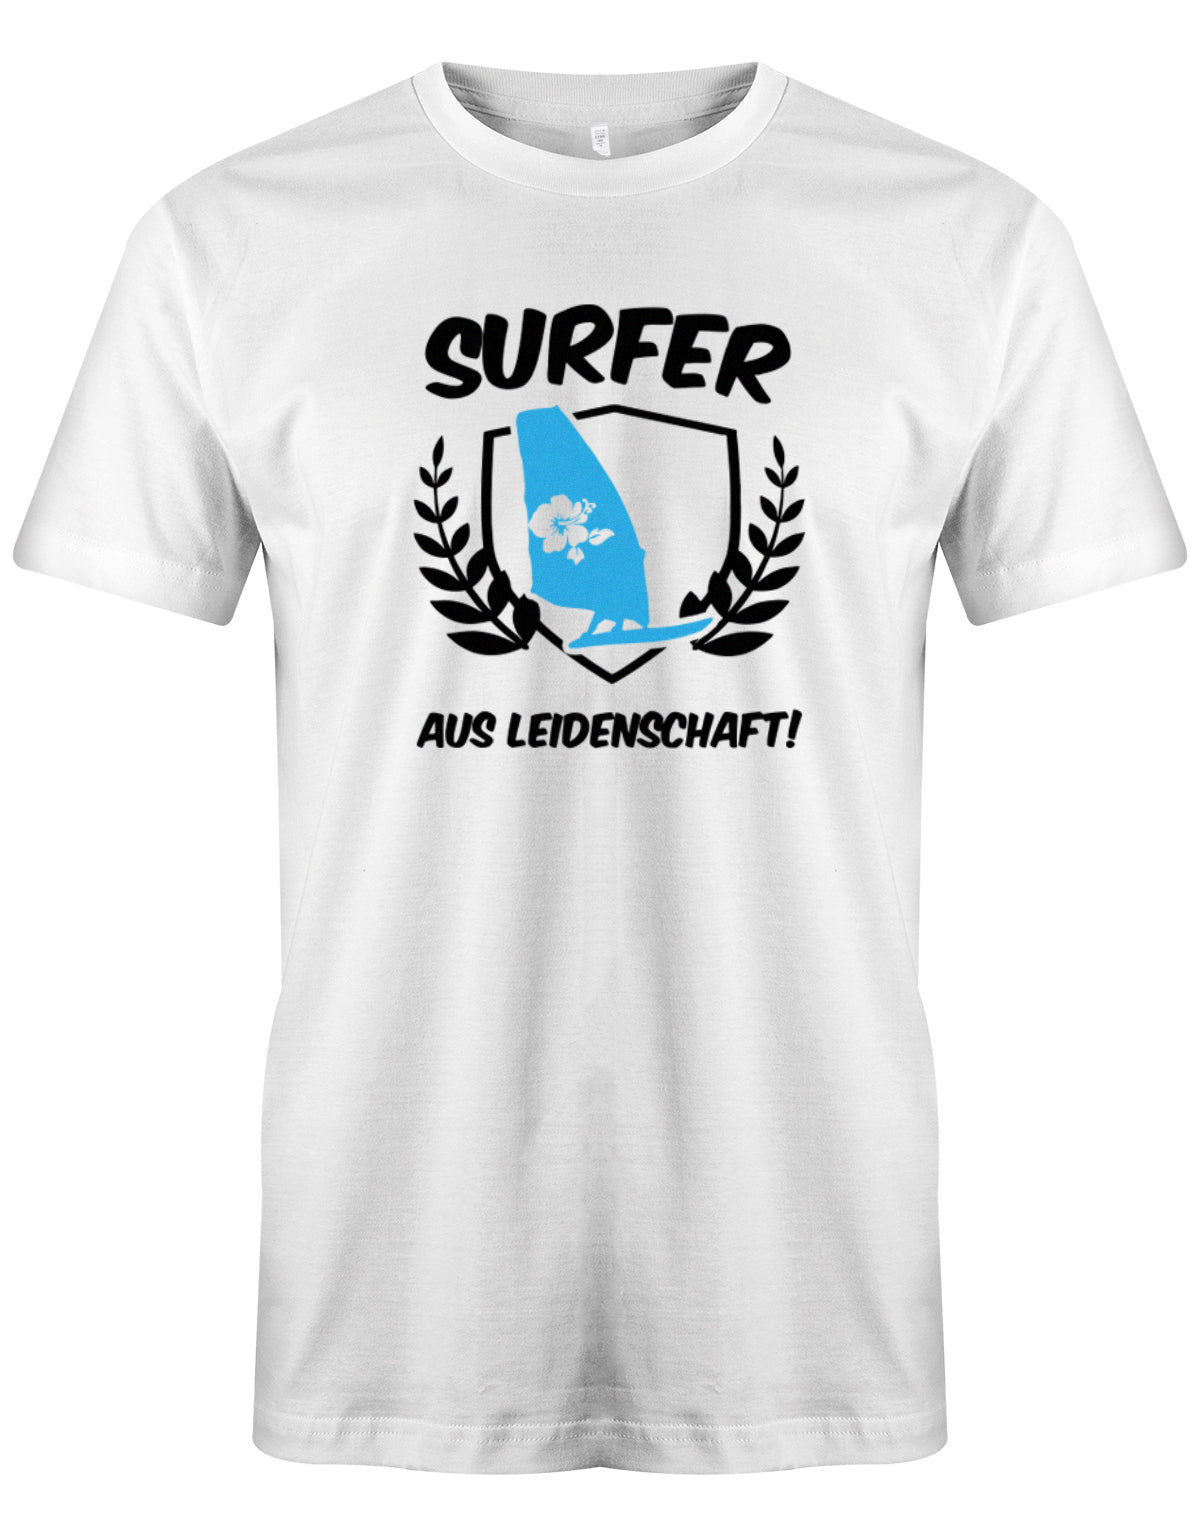 Das lustige Surfer t-shirt bedruckt mit "Surfer Aus Leidenschaft mit Surfer und Hibiskus Segel. Weiss